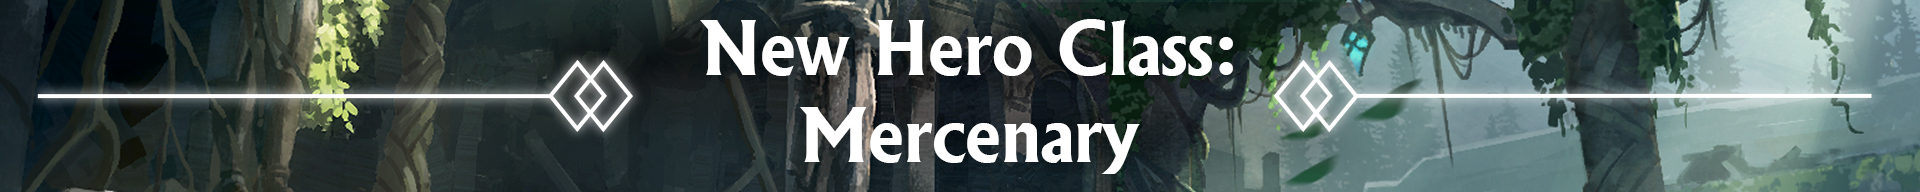 New Hero Class: Mercenary